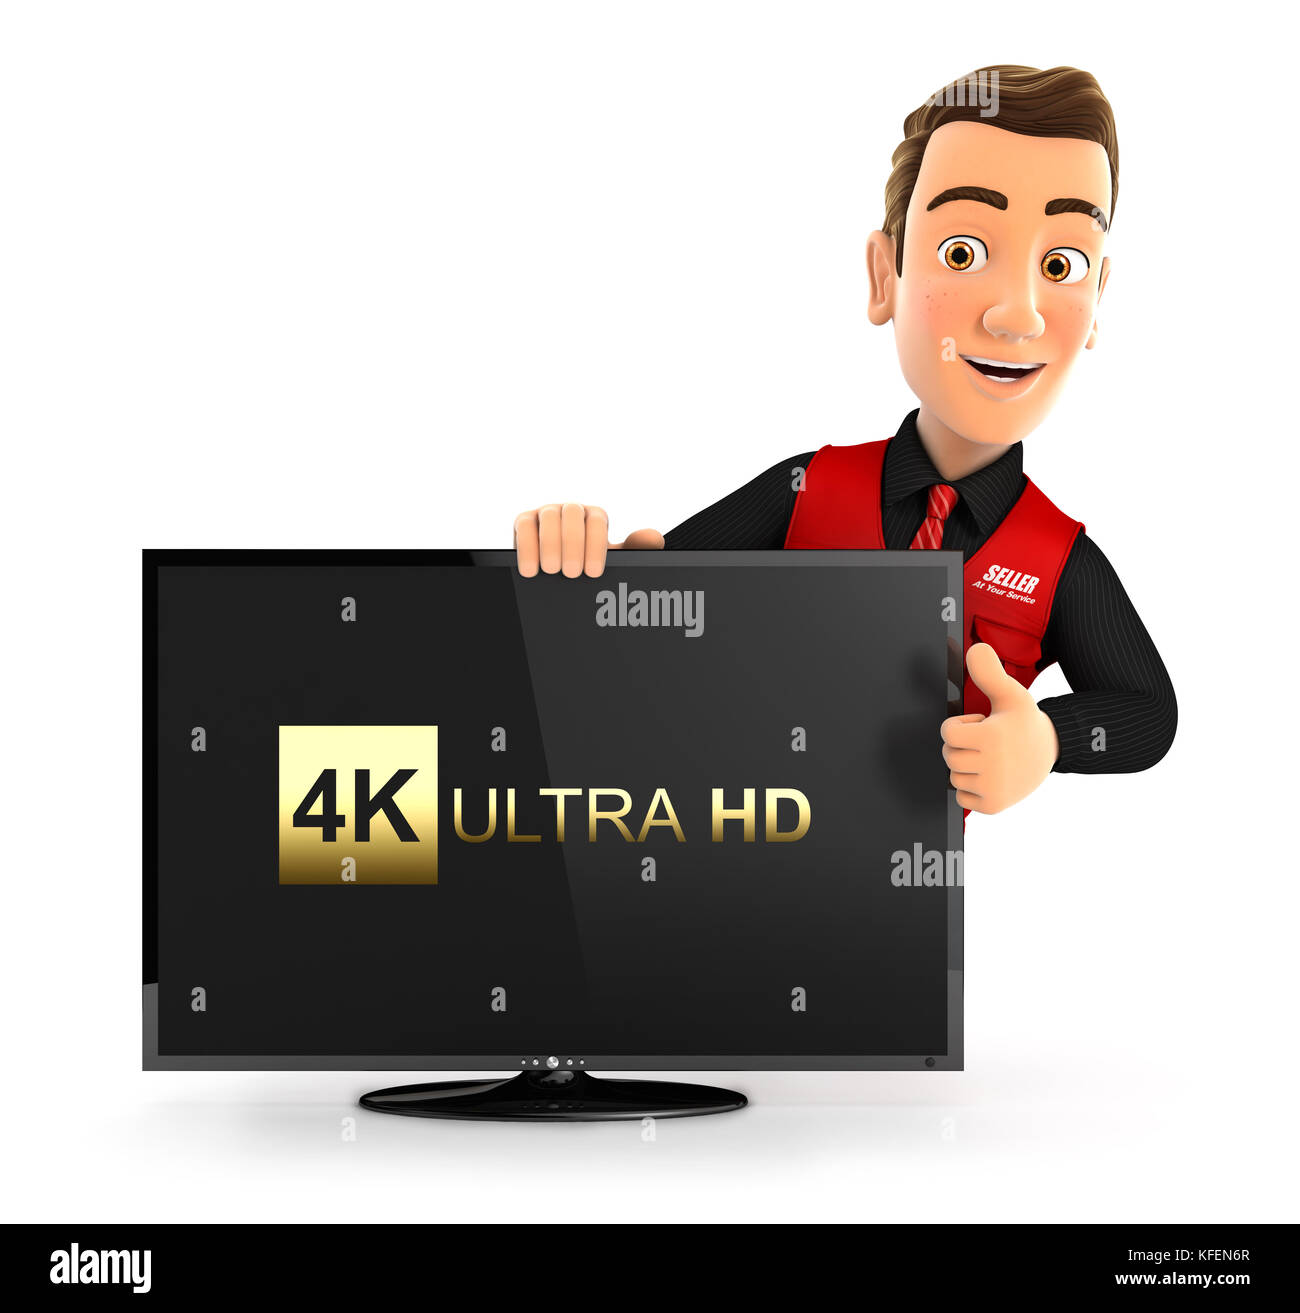 Vendedor con 3D Ultra HD 4k tv y pulgar arriba, ilustración con fondo blanco aislado Foto de stock